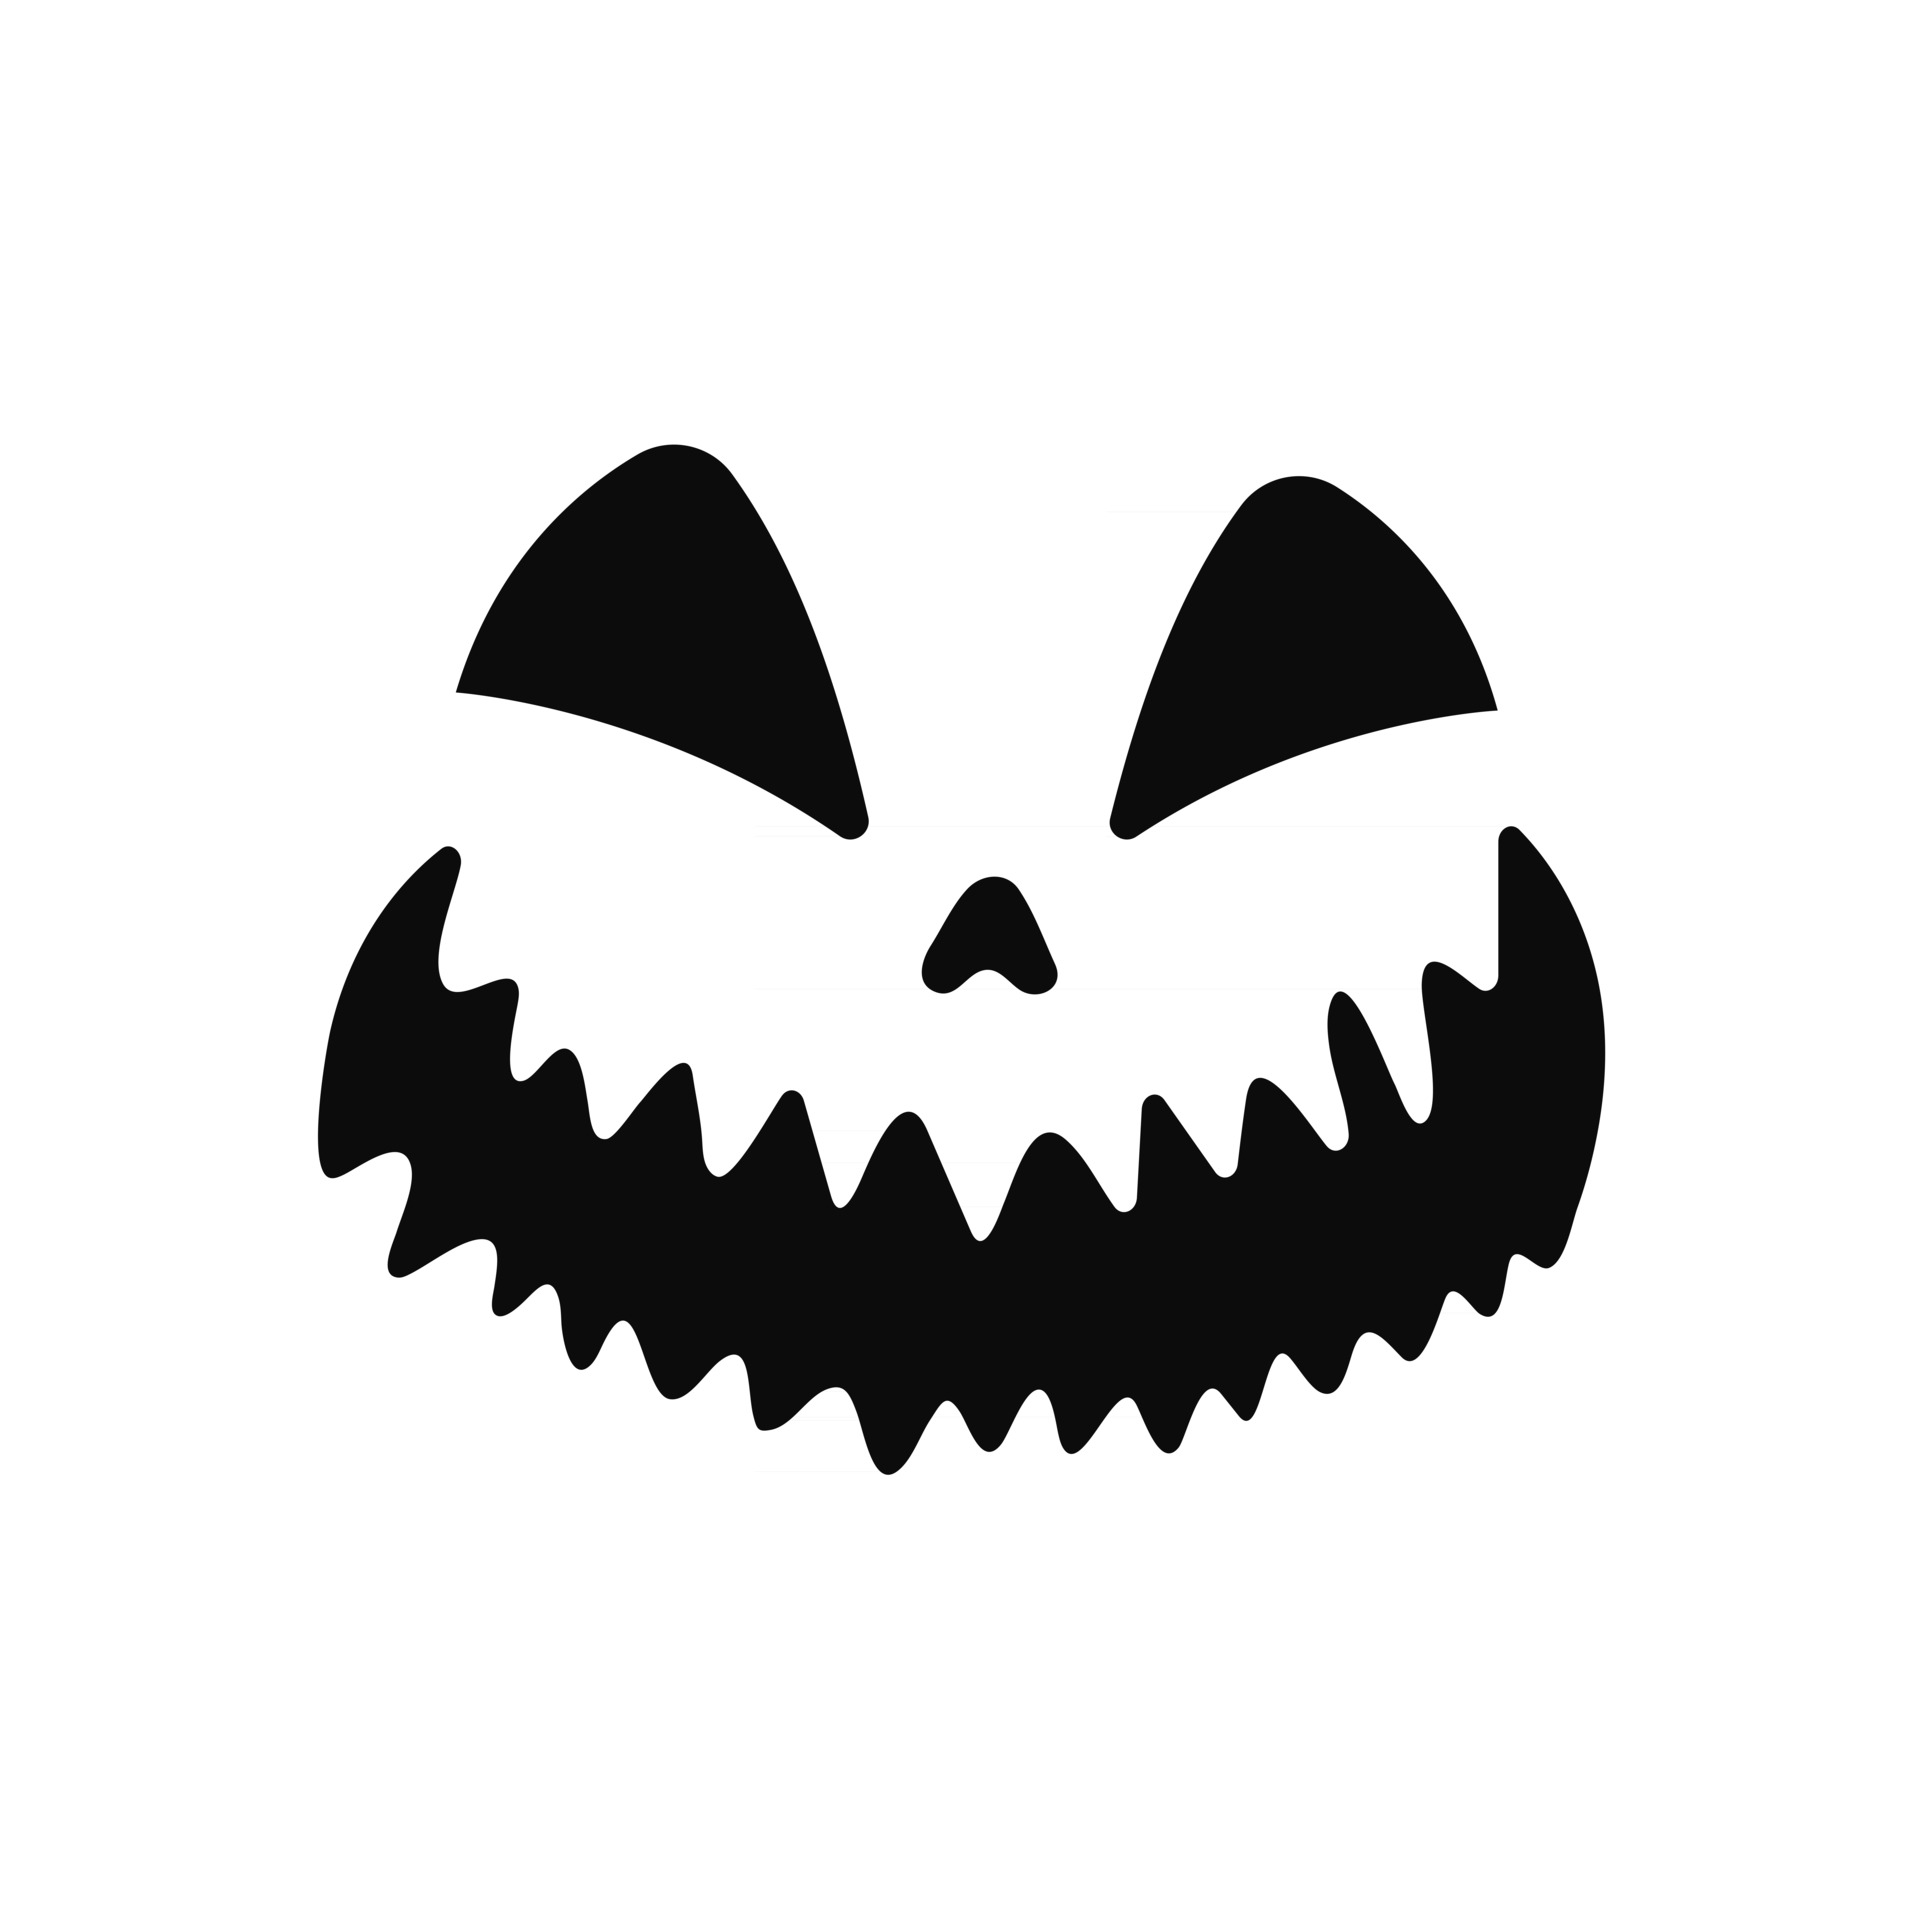 Rostos pretos assustadores, engraçados e de terror de abóbora ou fantasma  de halloween.